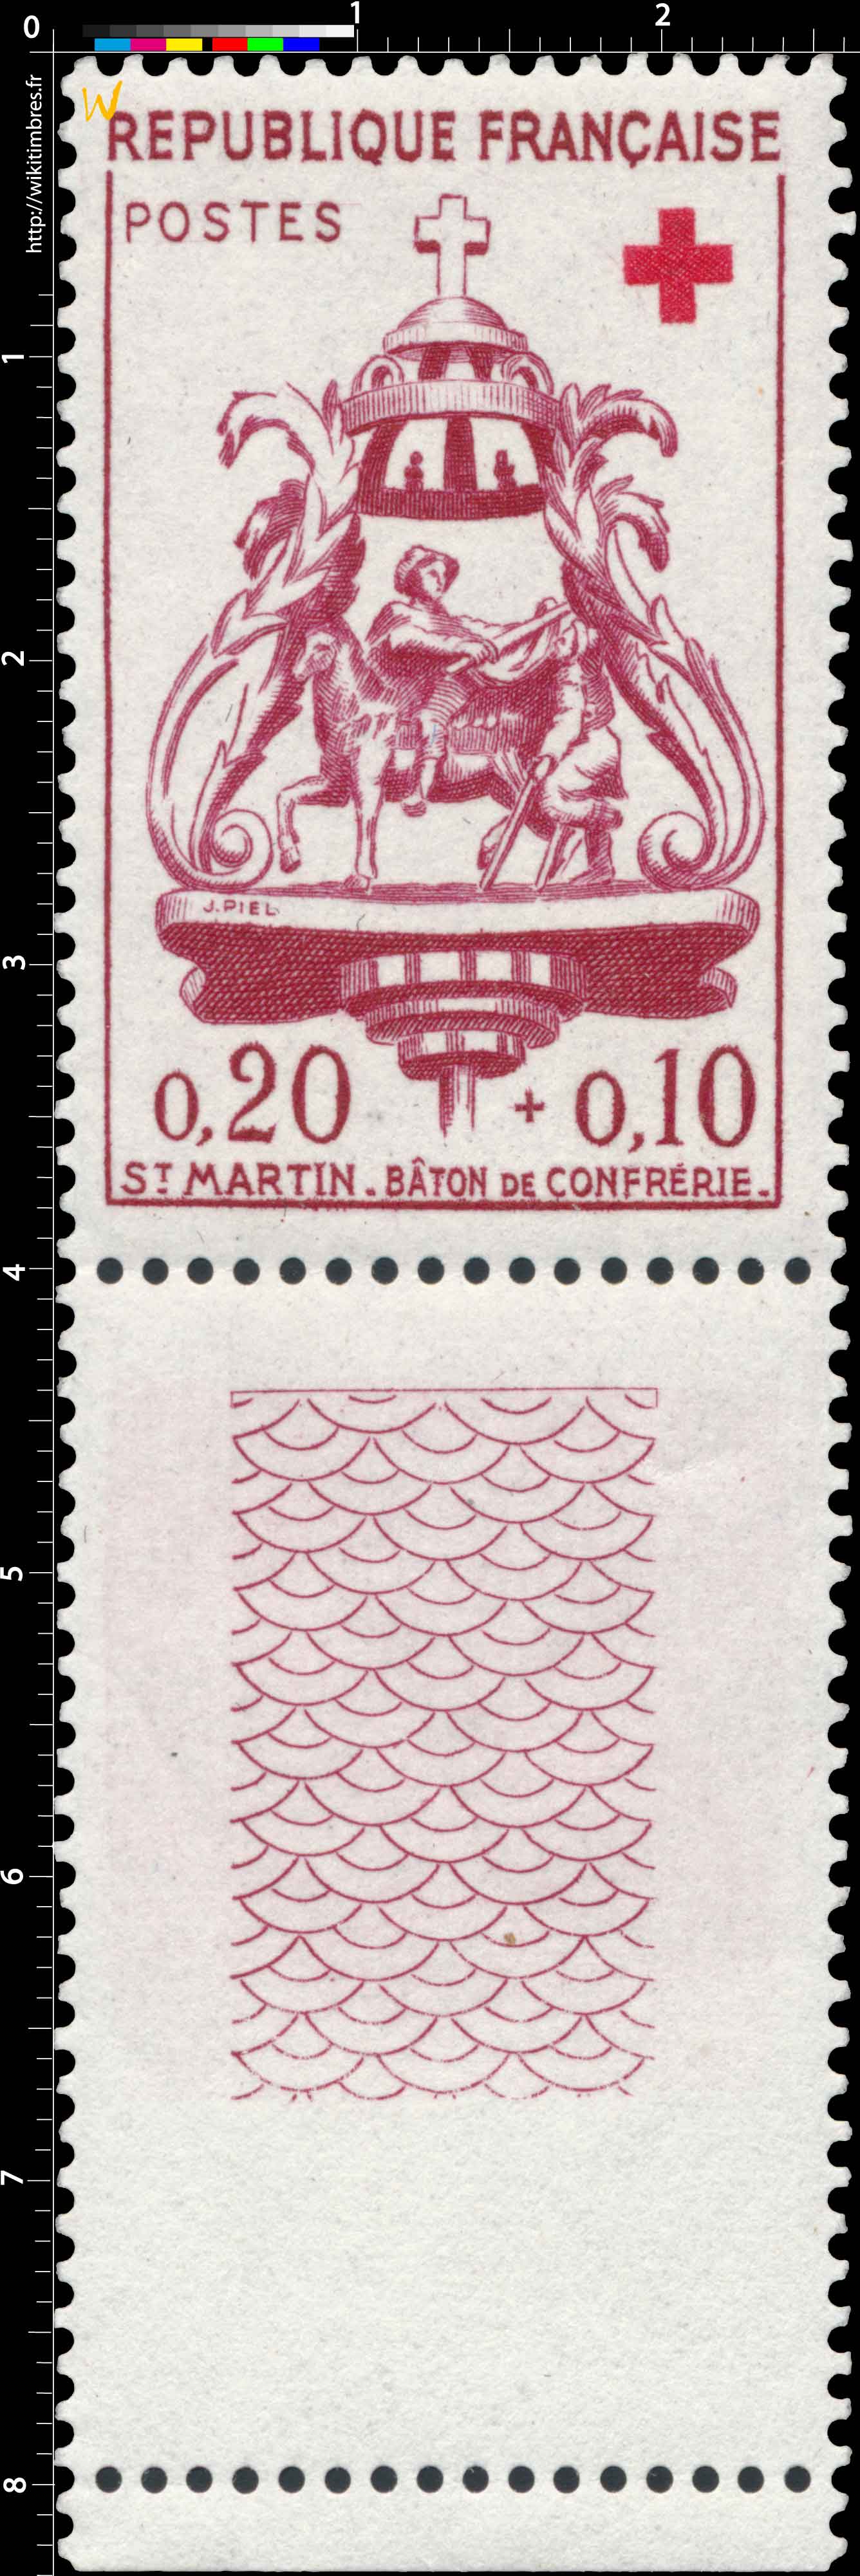 St MARTIN - BÂTON DE CONFRÉRIE